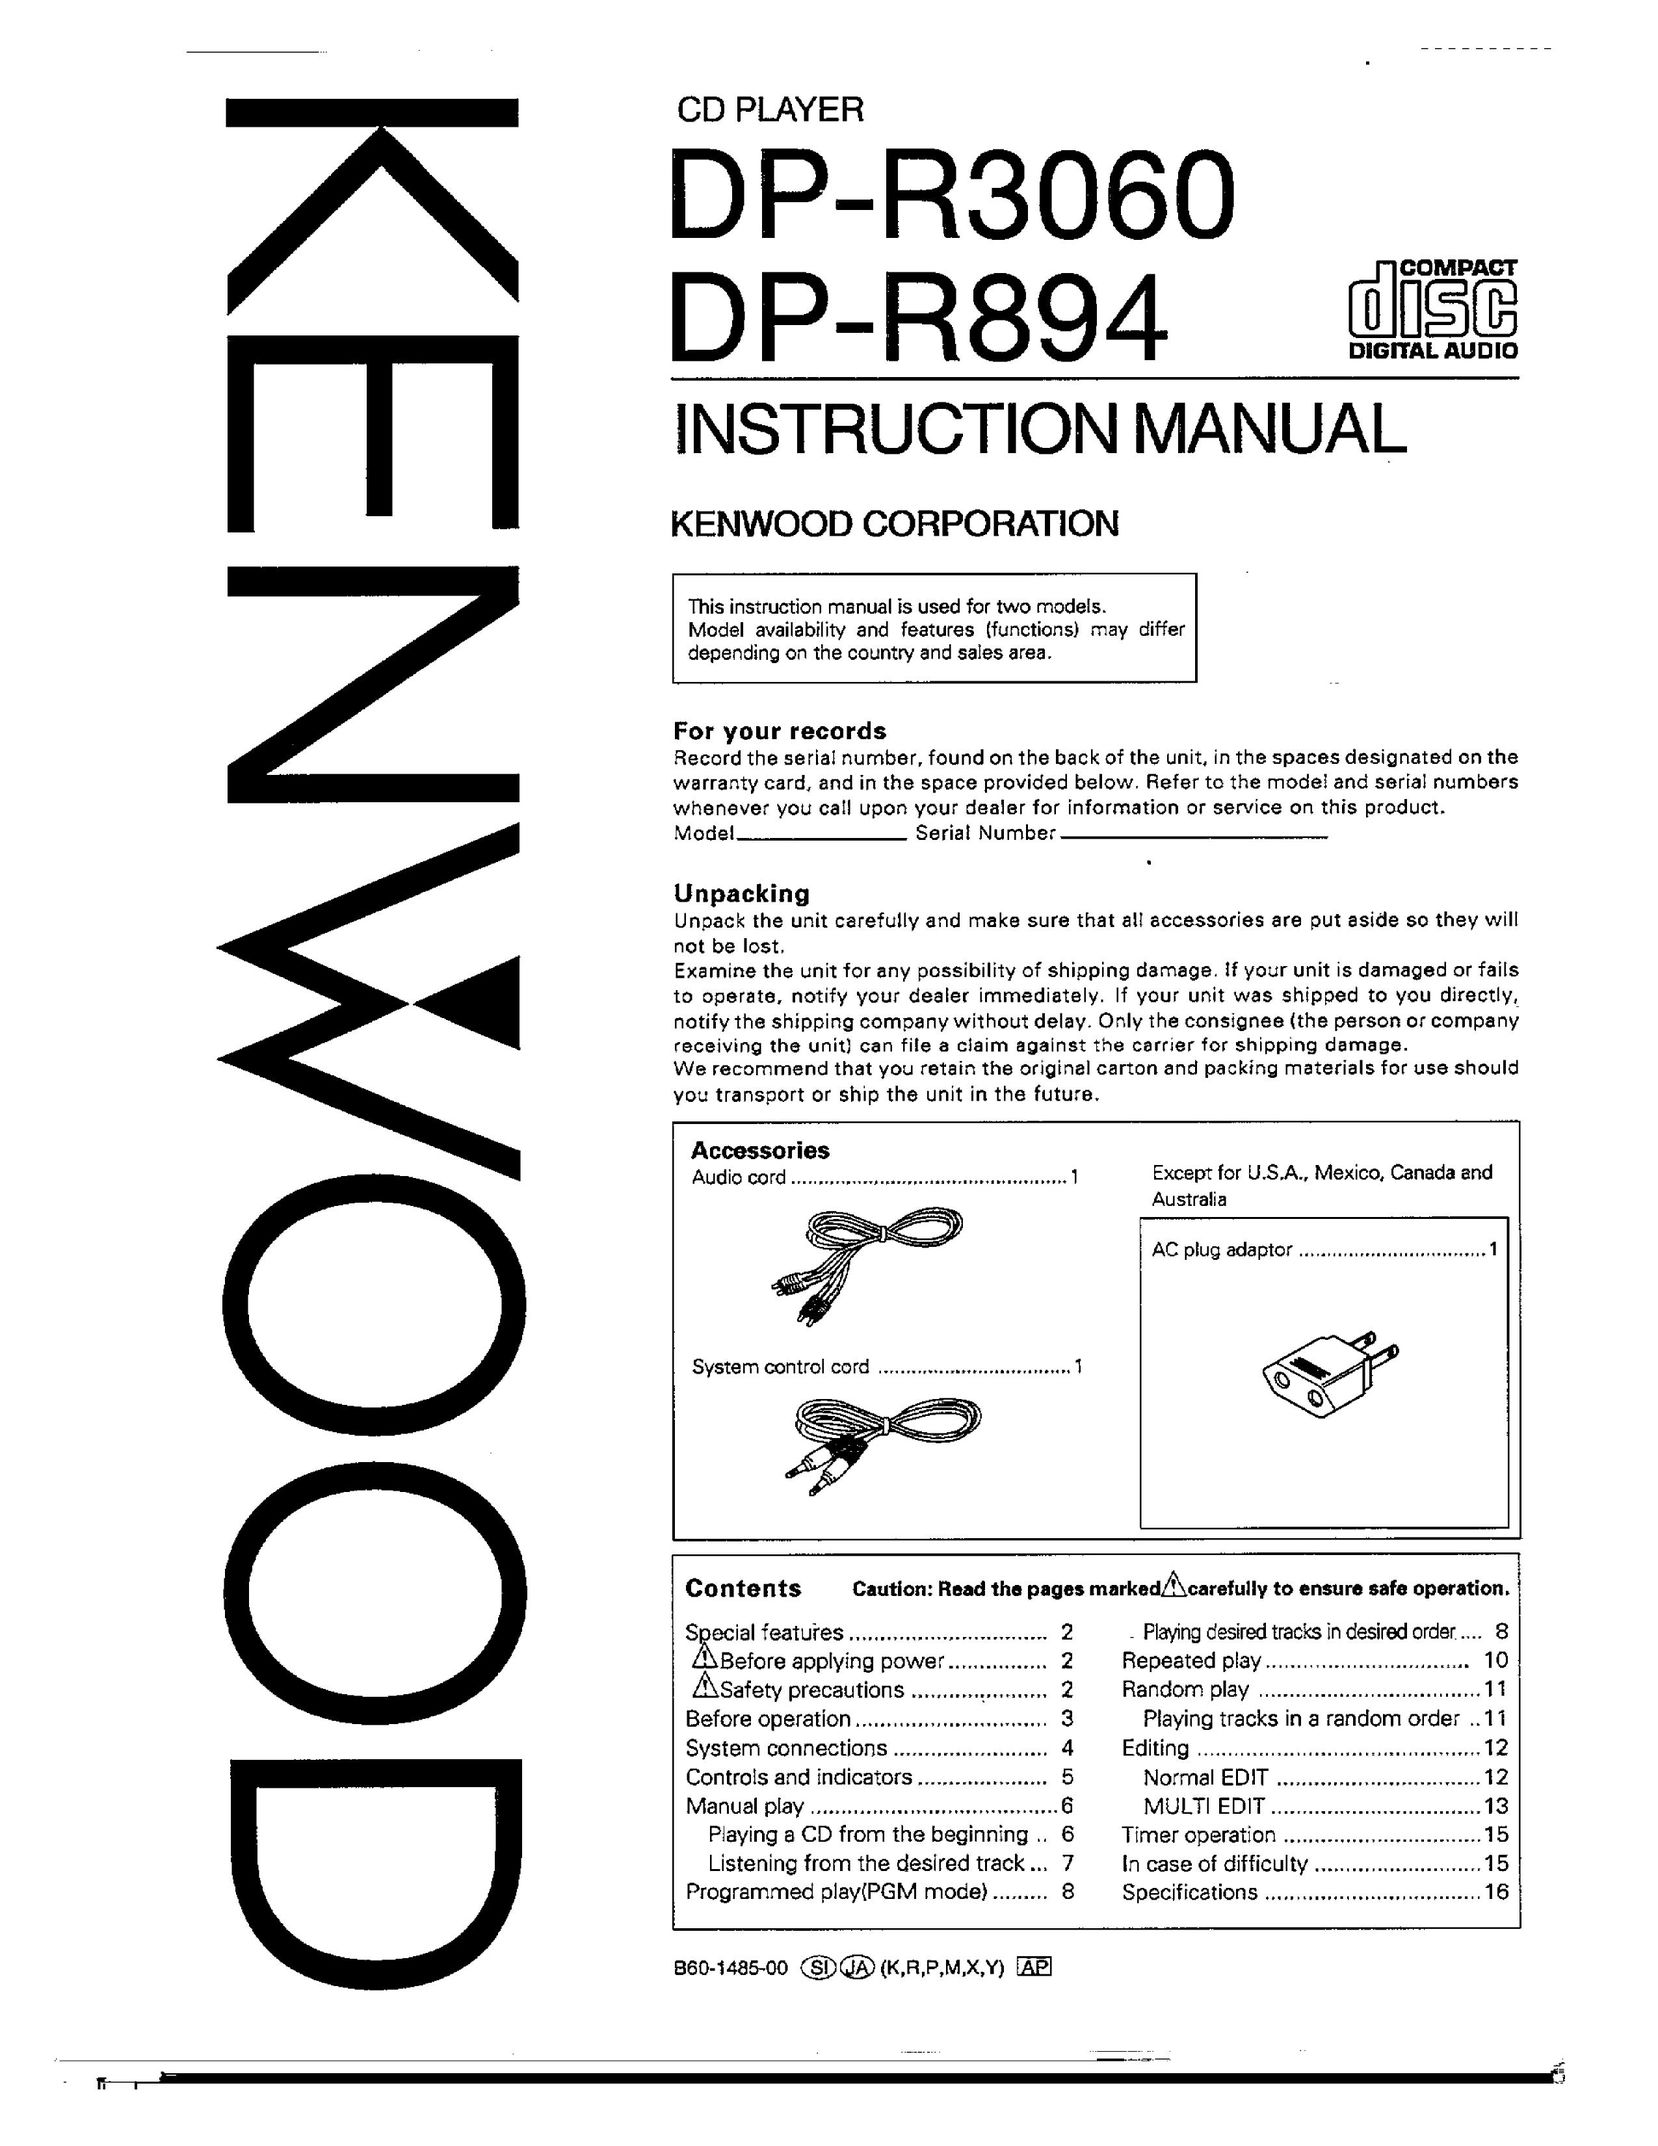 Kenwood DP-R894 CD Player User Manual